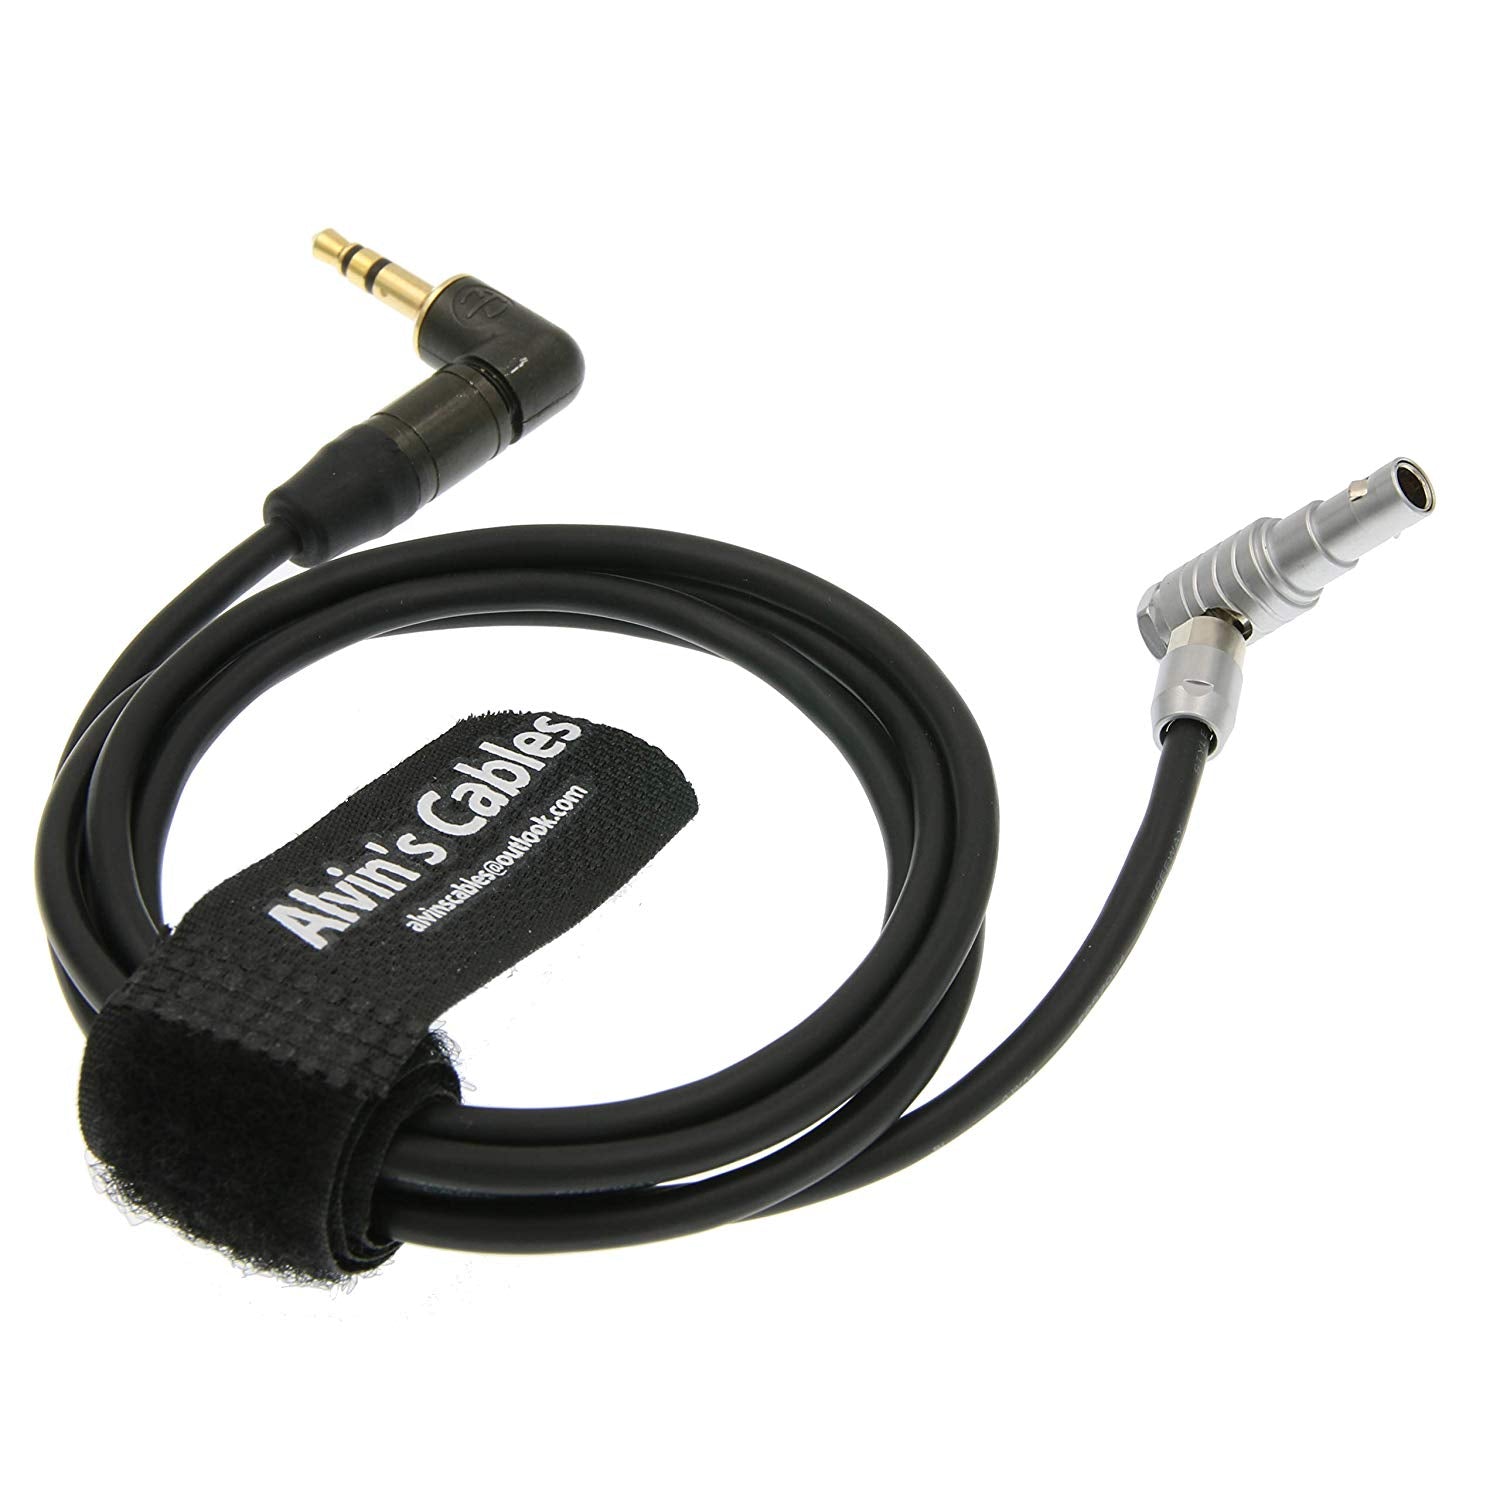 Alvin's Cables Audiokabel für ARRI Alexa Mini-Kamera 5-poliger rechtwinkliger Stecker auf rechtwinkligen 3,5-mm-TRS